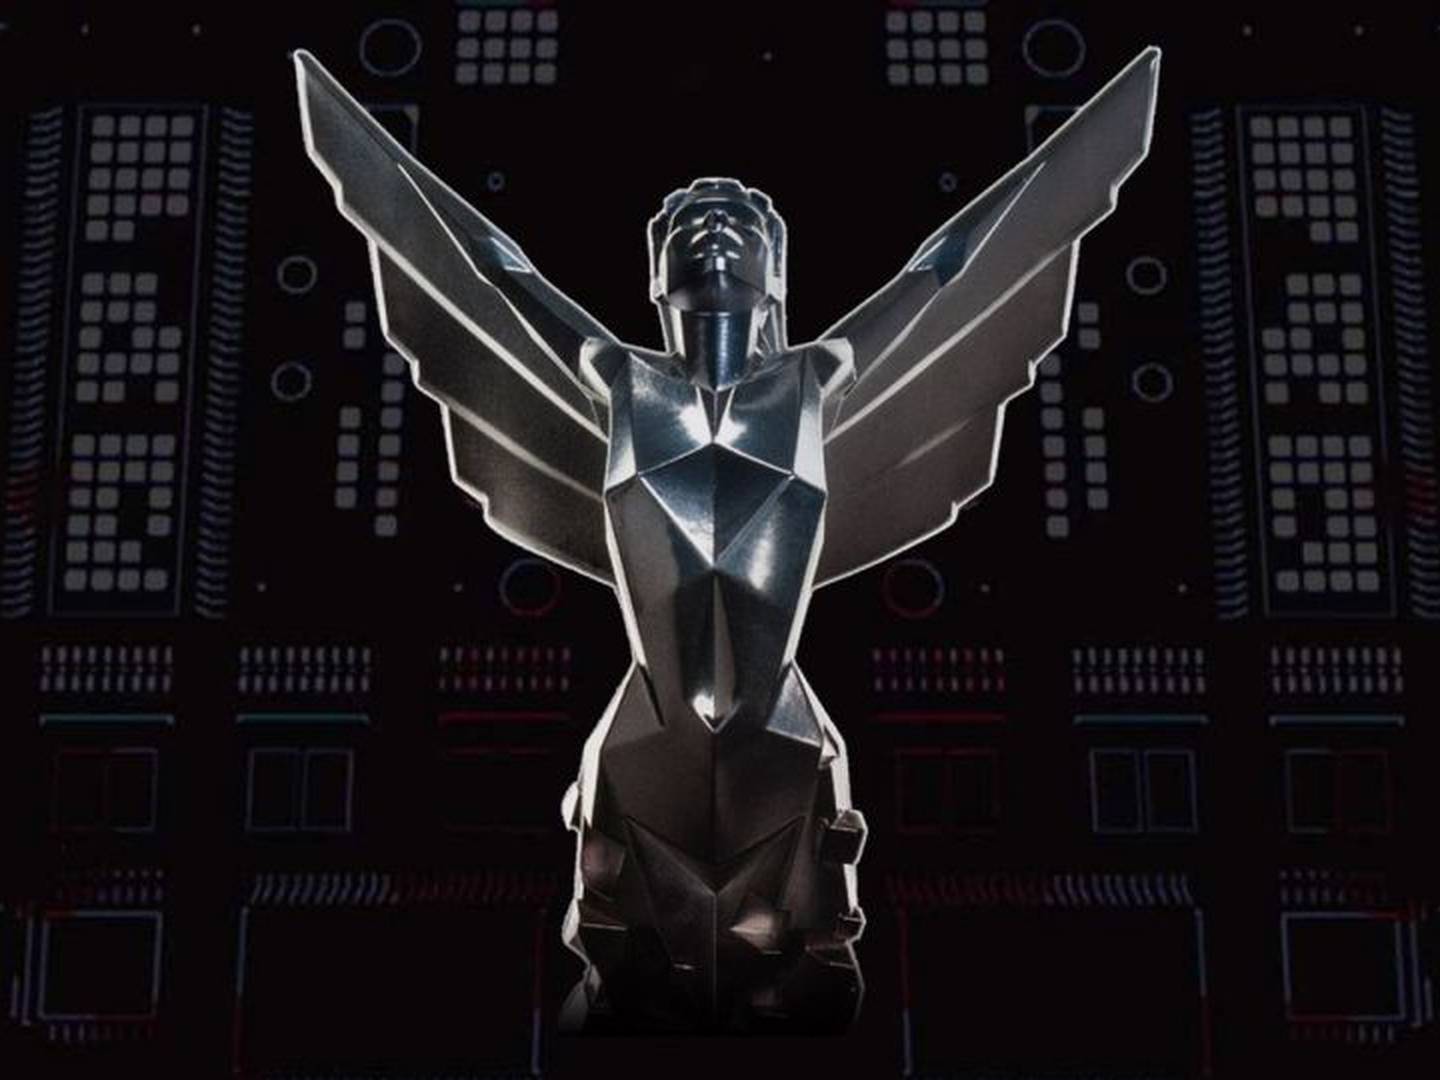 GOTY: The Game Awards revela candidatos a Jogo do Ano